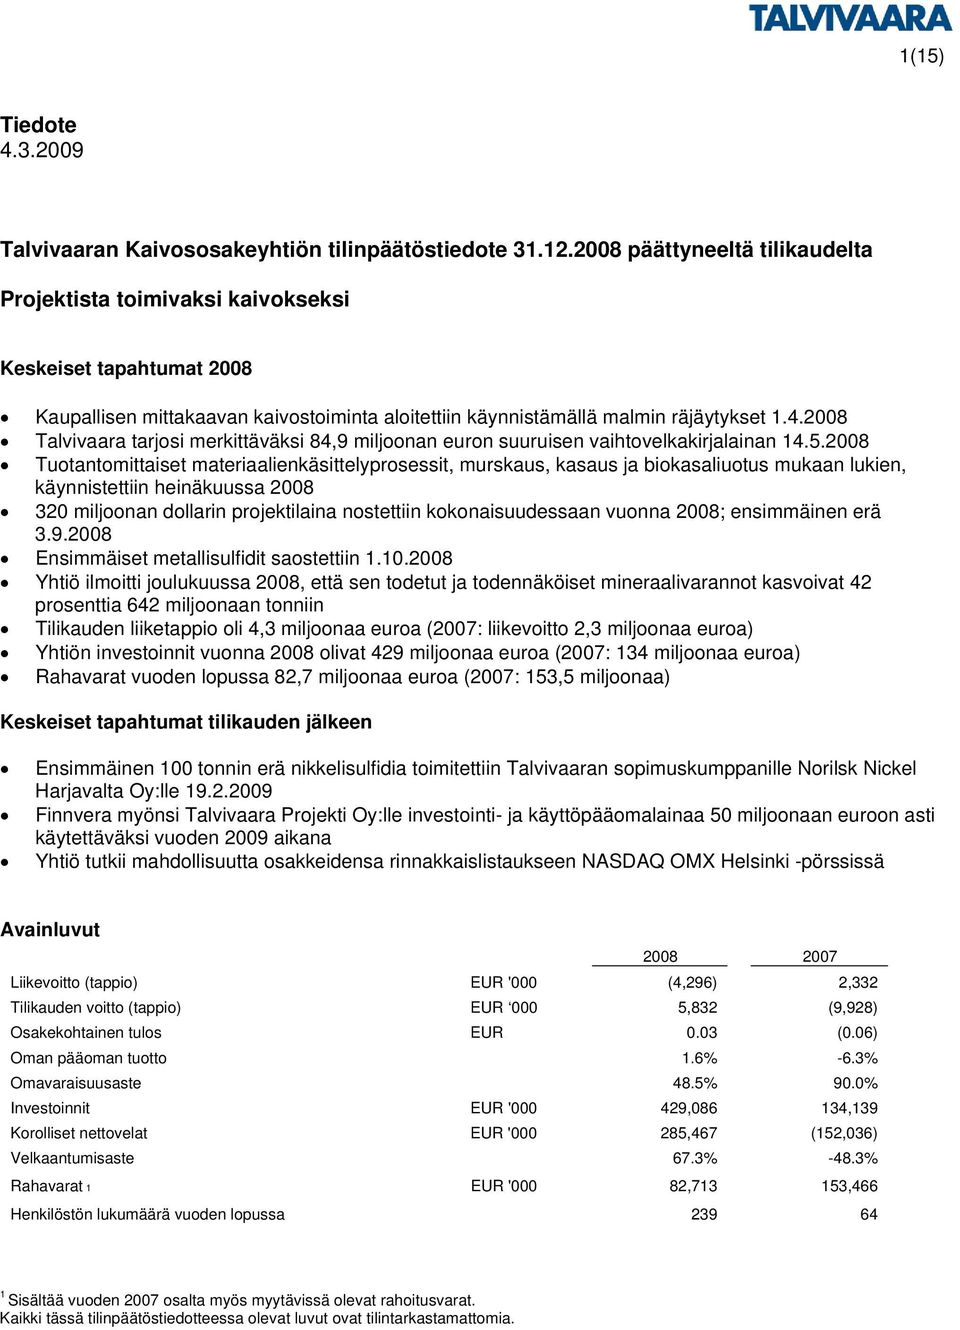 2008 Talvivaara tarjosi merkittäväksi 84,9 miljoonan euron suuruisen vaihtovelkakirjalainan 14.5.